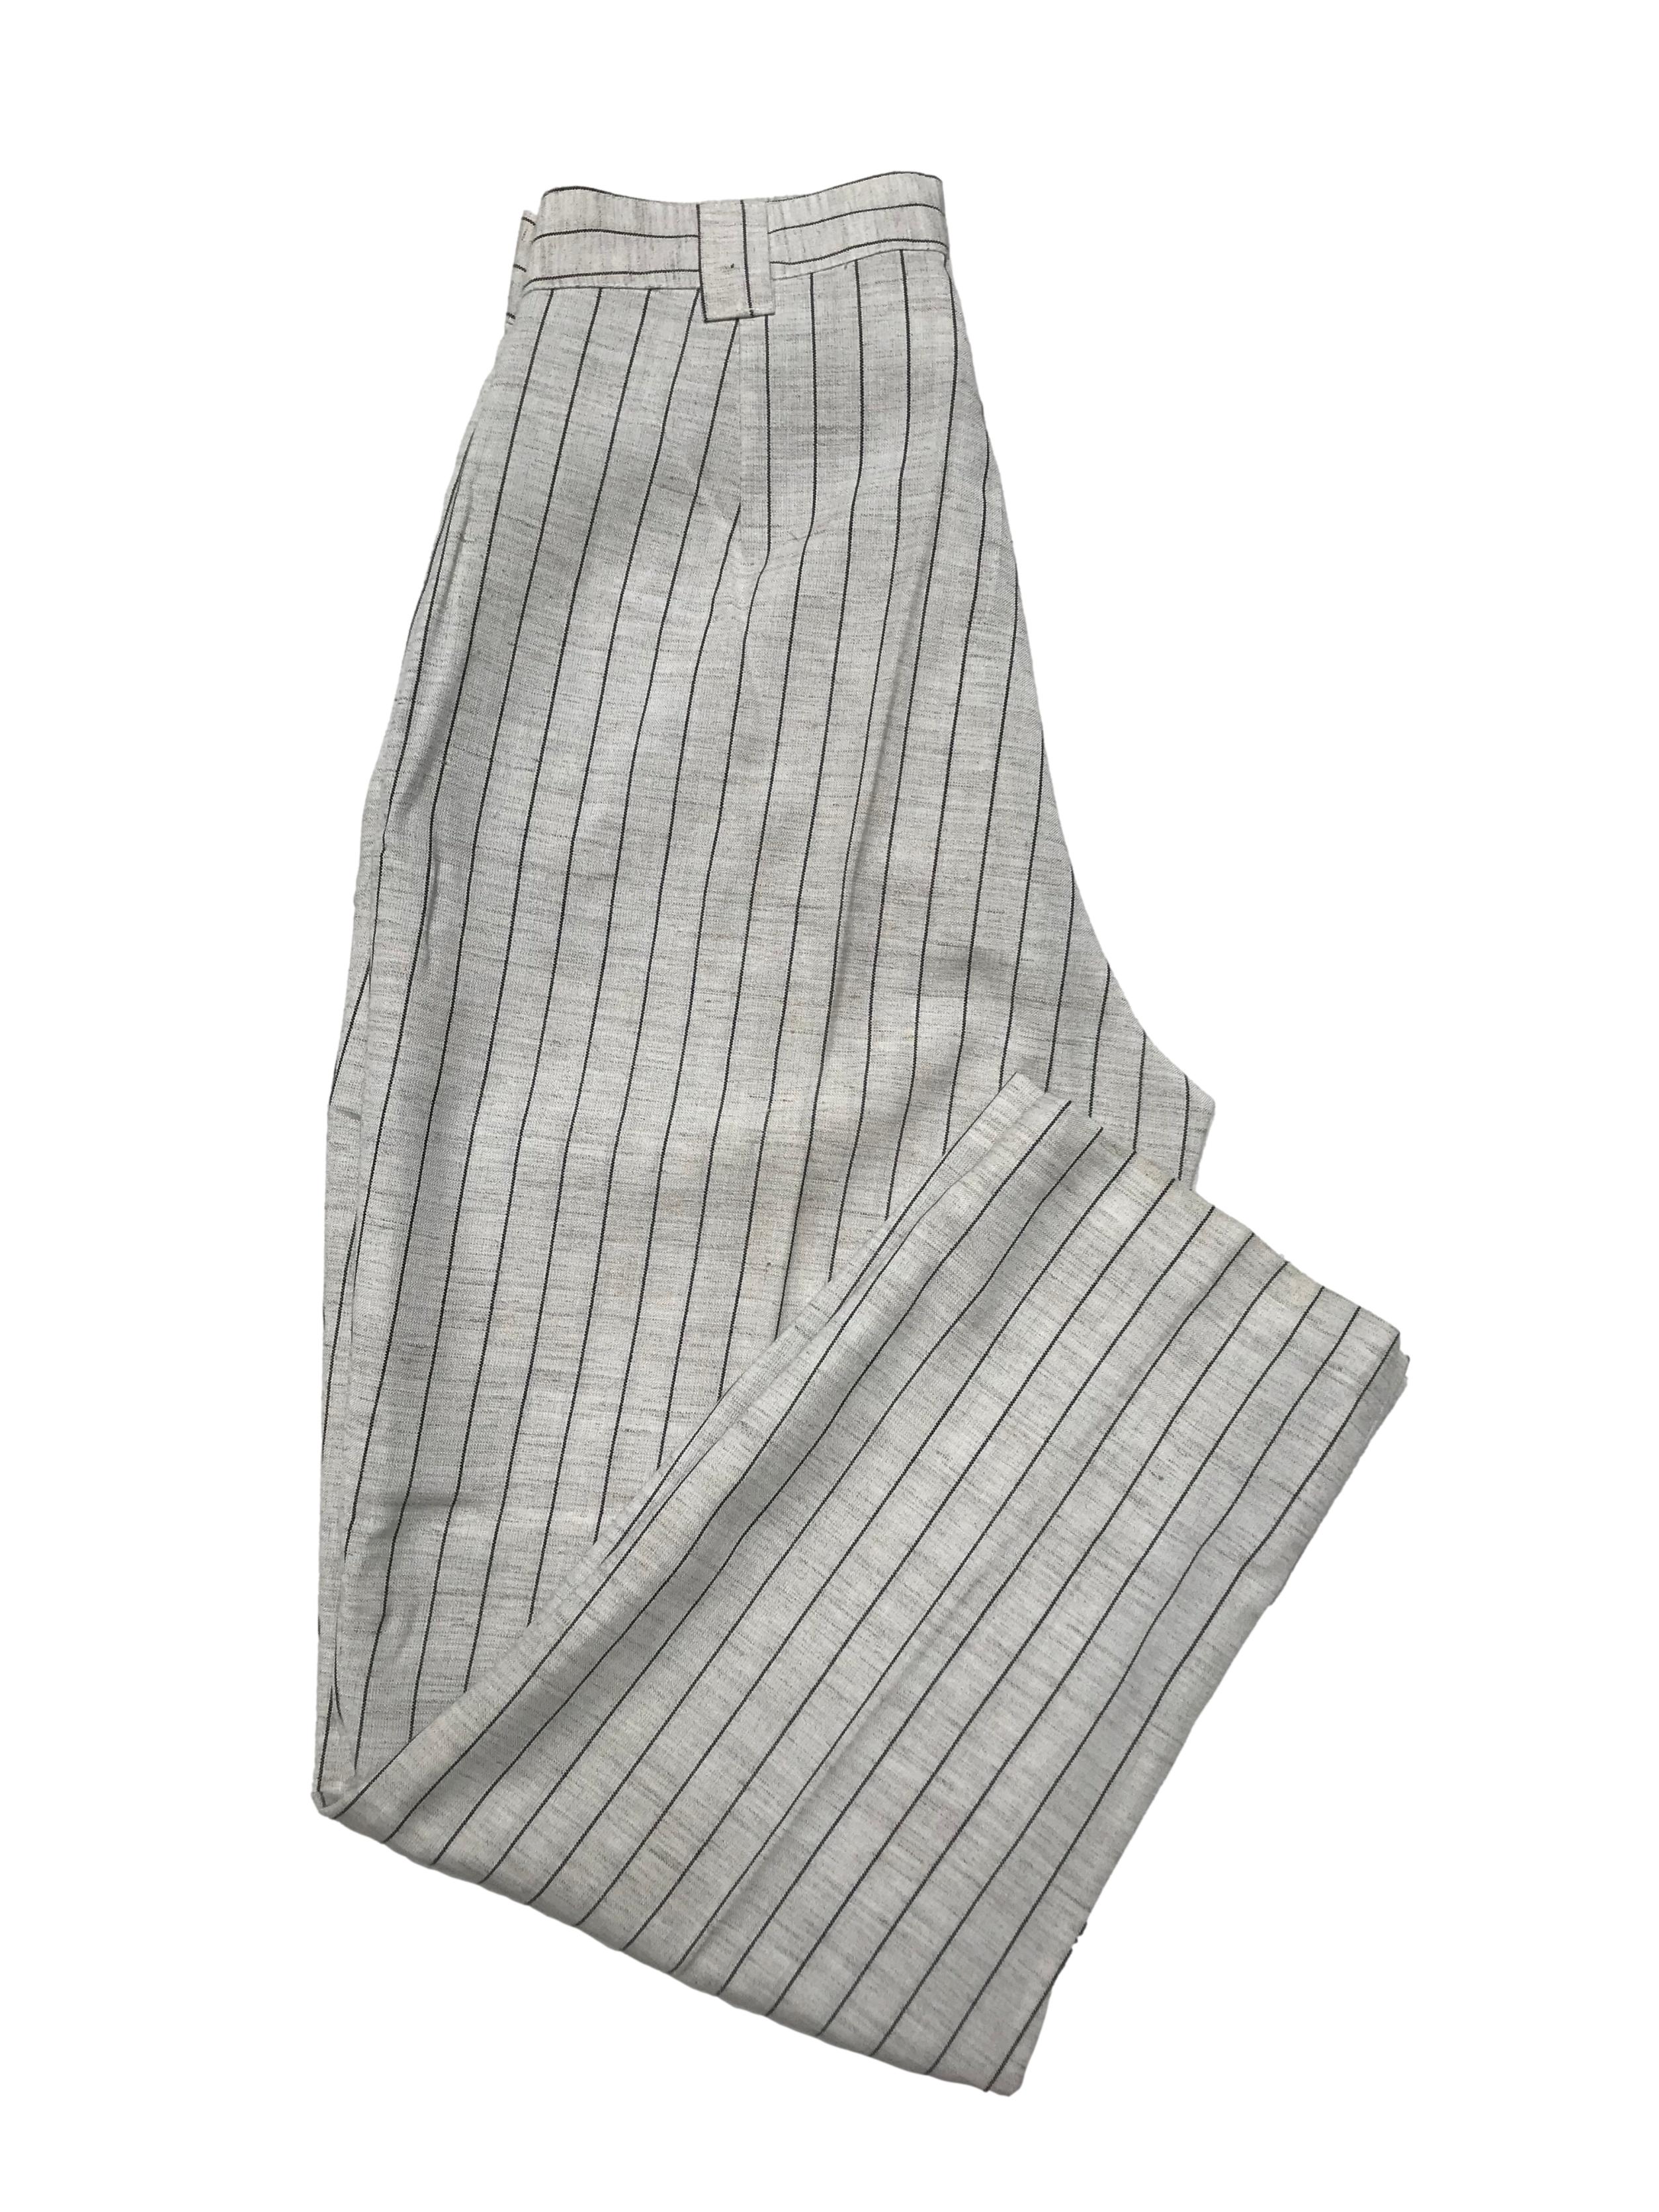 Pantalón vintage crema con líneas grises, pliegues delanteros estilo slouchy, tiene bolsillos laterales. Cintura 72cm Largo 96cm